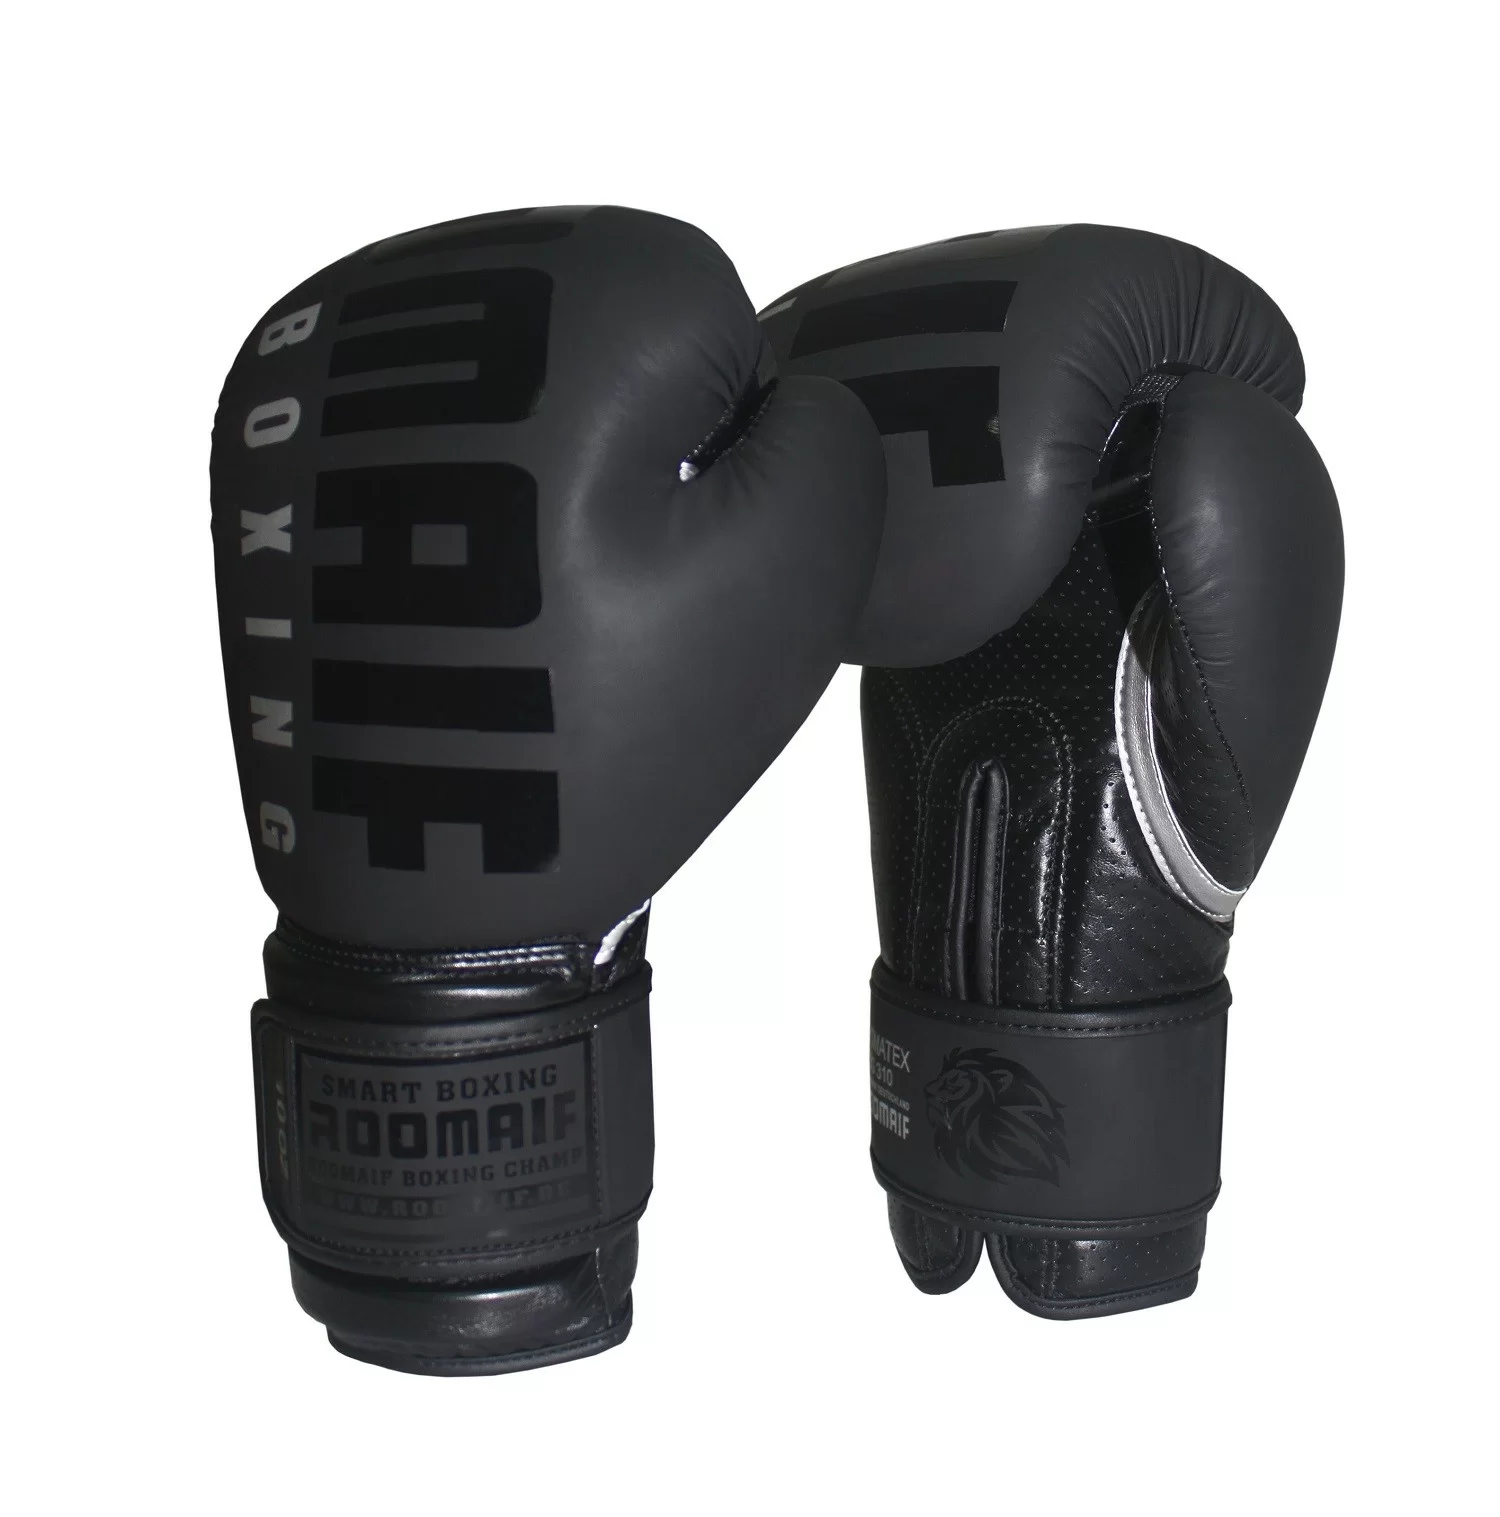 Реальное фото Перчатки боксерские Roomaif RBG-310 Dyex black от магазина СпортСЕ